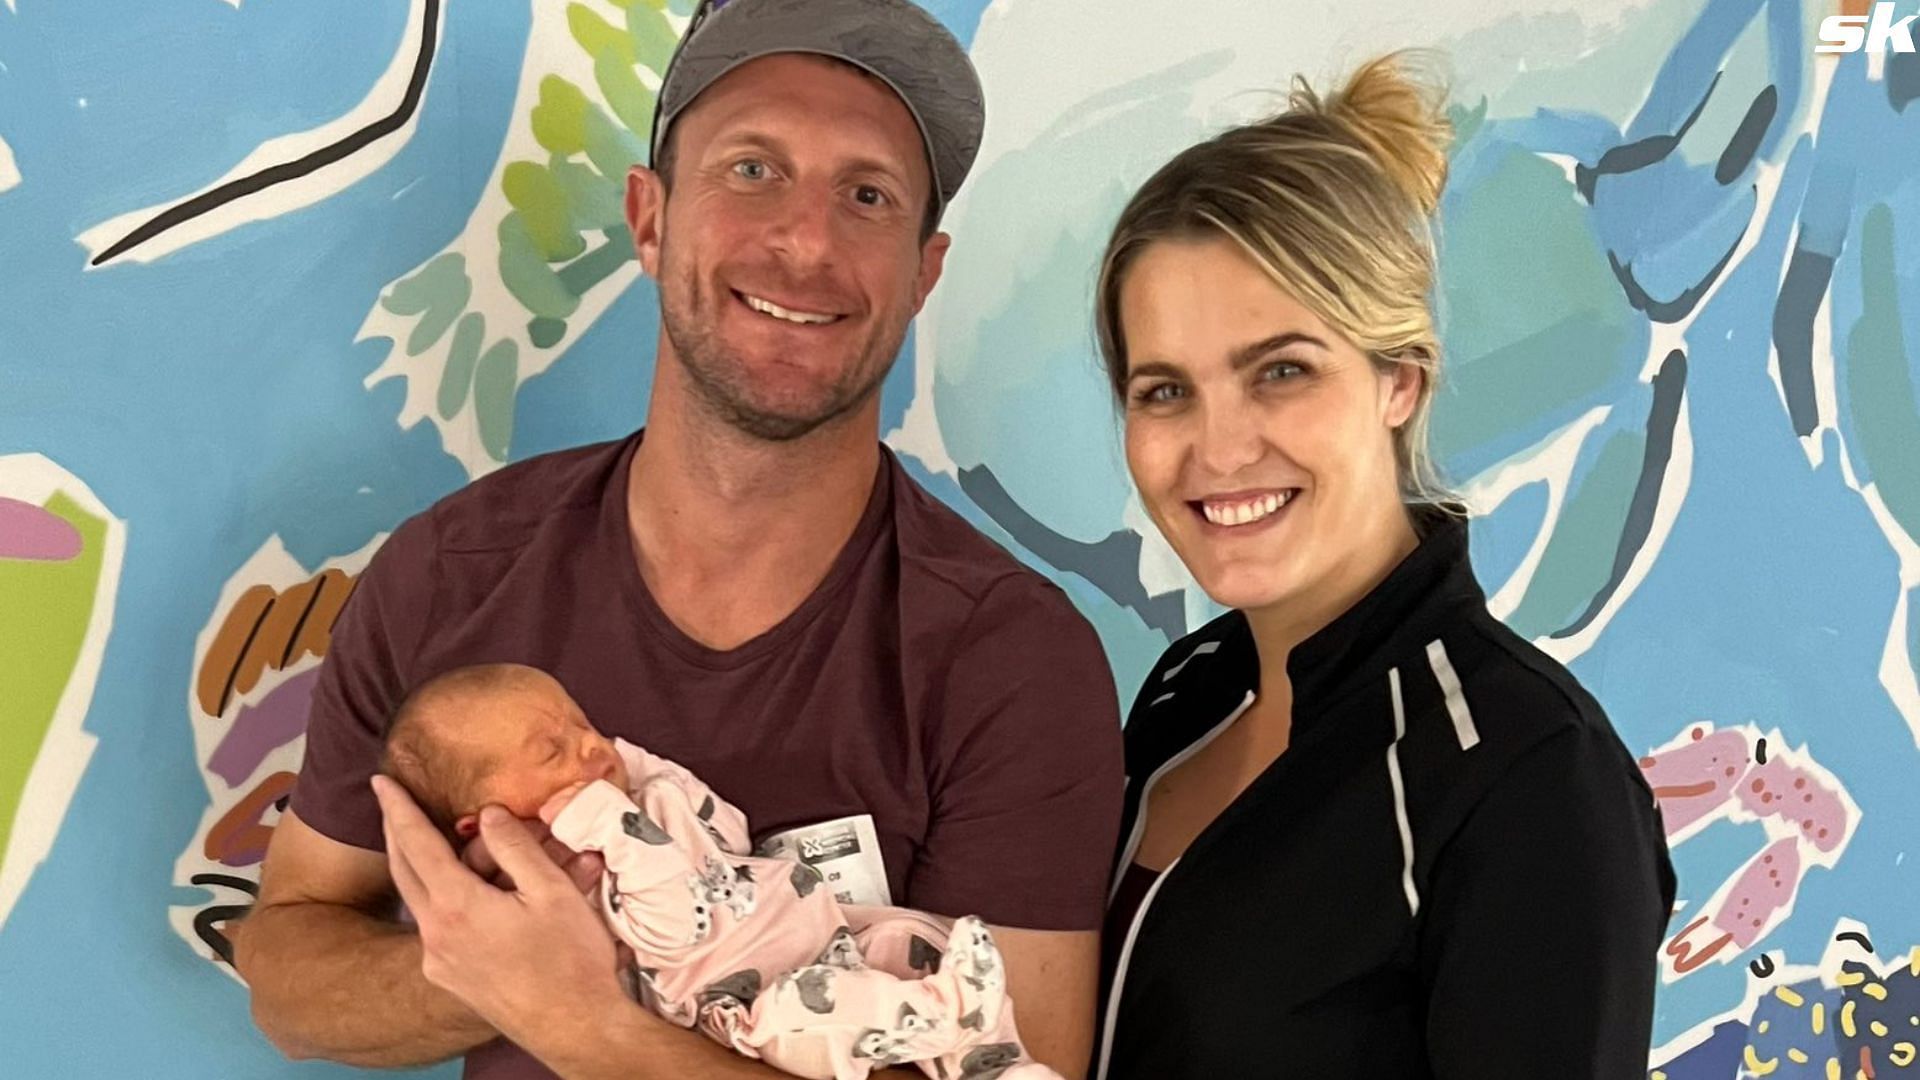 Max Scherzer and Erika with their newborn daughter.(Source: @Max_Scherzer Twitter)